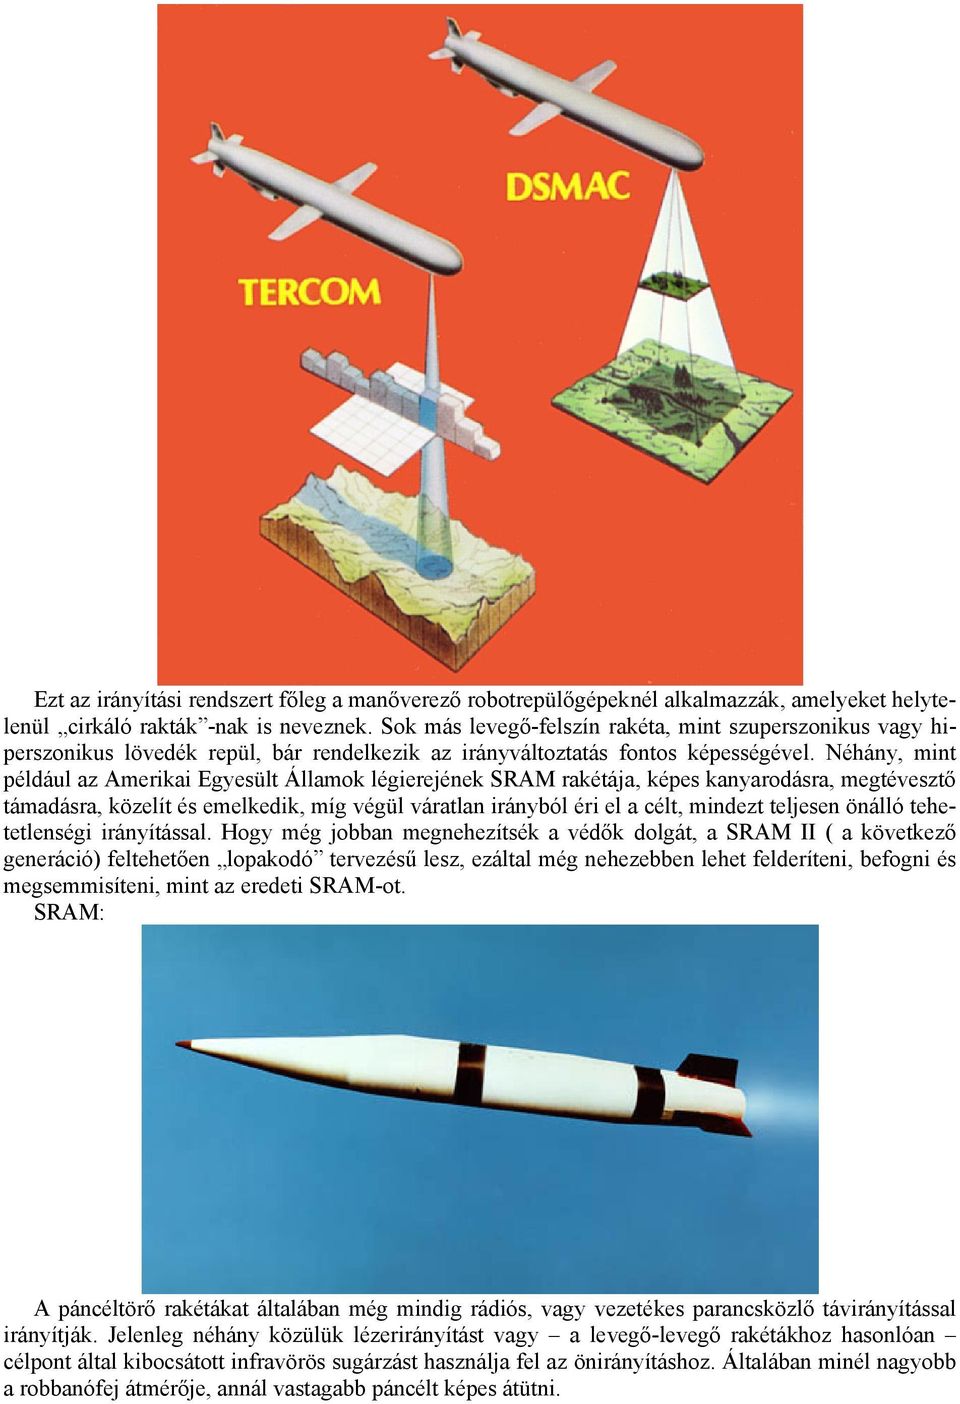 Néhány, mint például az Amerikai Egyesült Államok légierejének SRAM rakétája, képes kanyarodásra, megtévesztő támadásra, közelít és emelkedik, míg végül váratlan irányból éri el a célt, mindezt